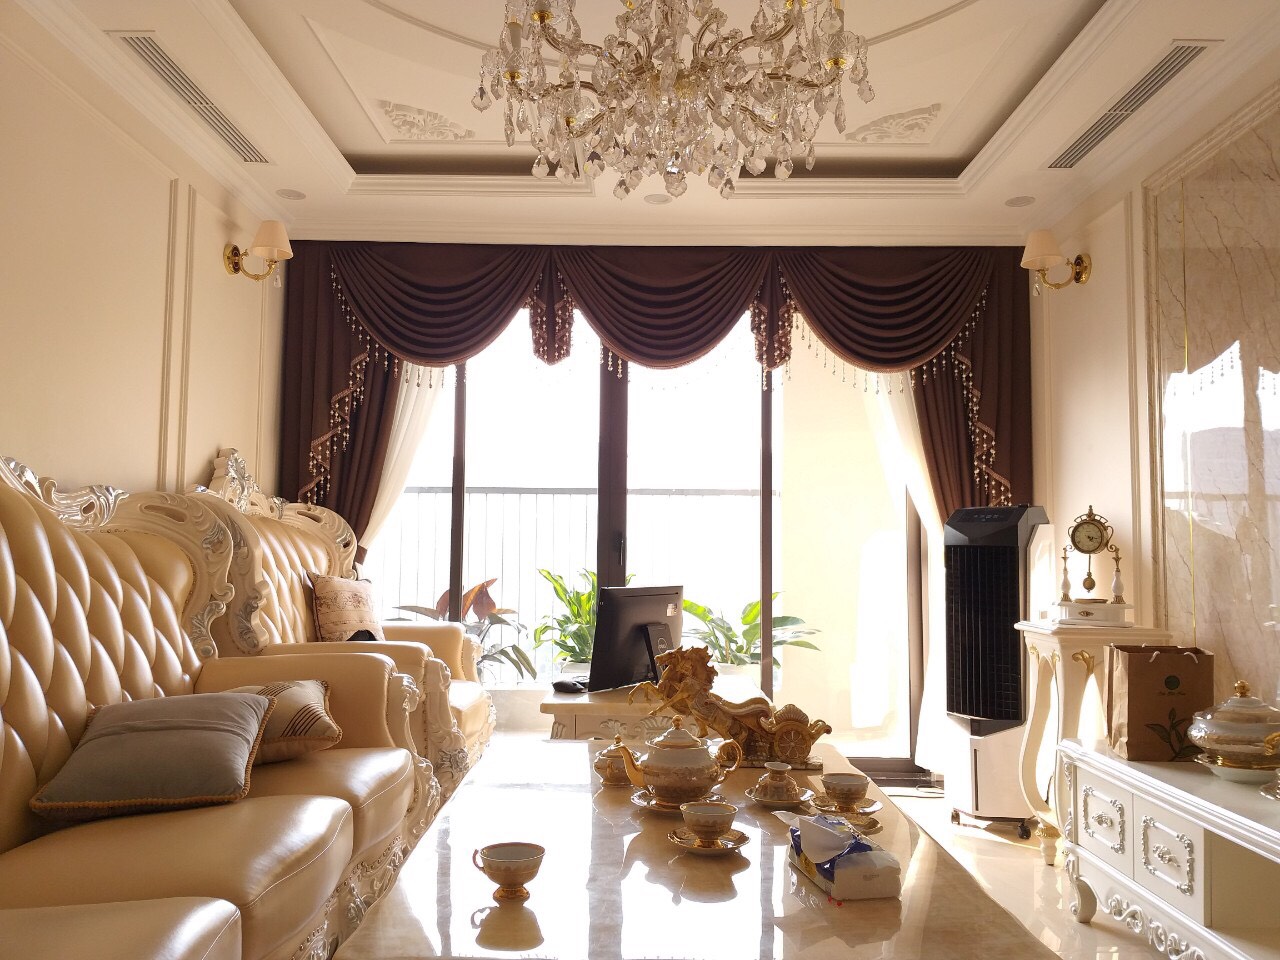 Các mẫu mành rèm cửa đẹp cho phòng khách tại Thái Bình